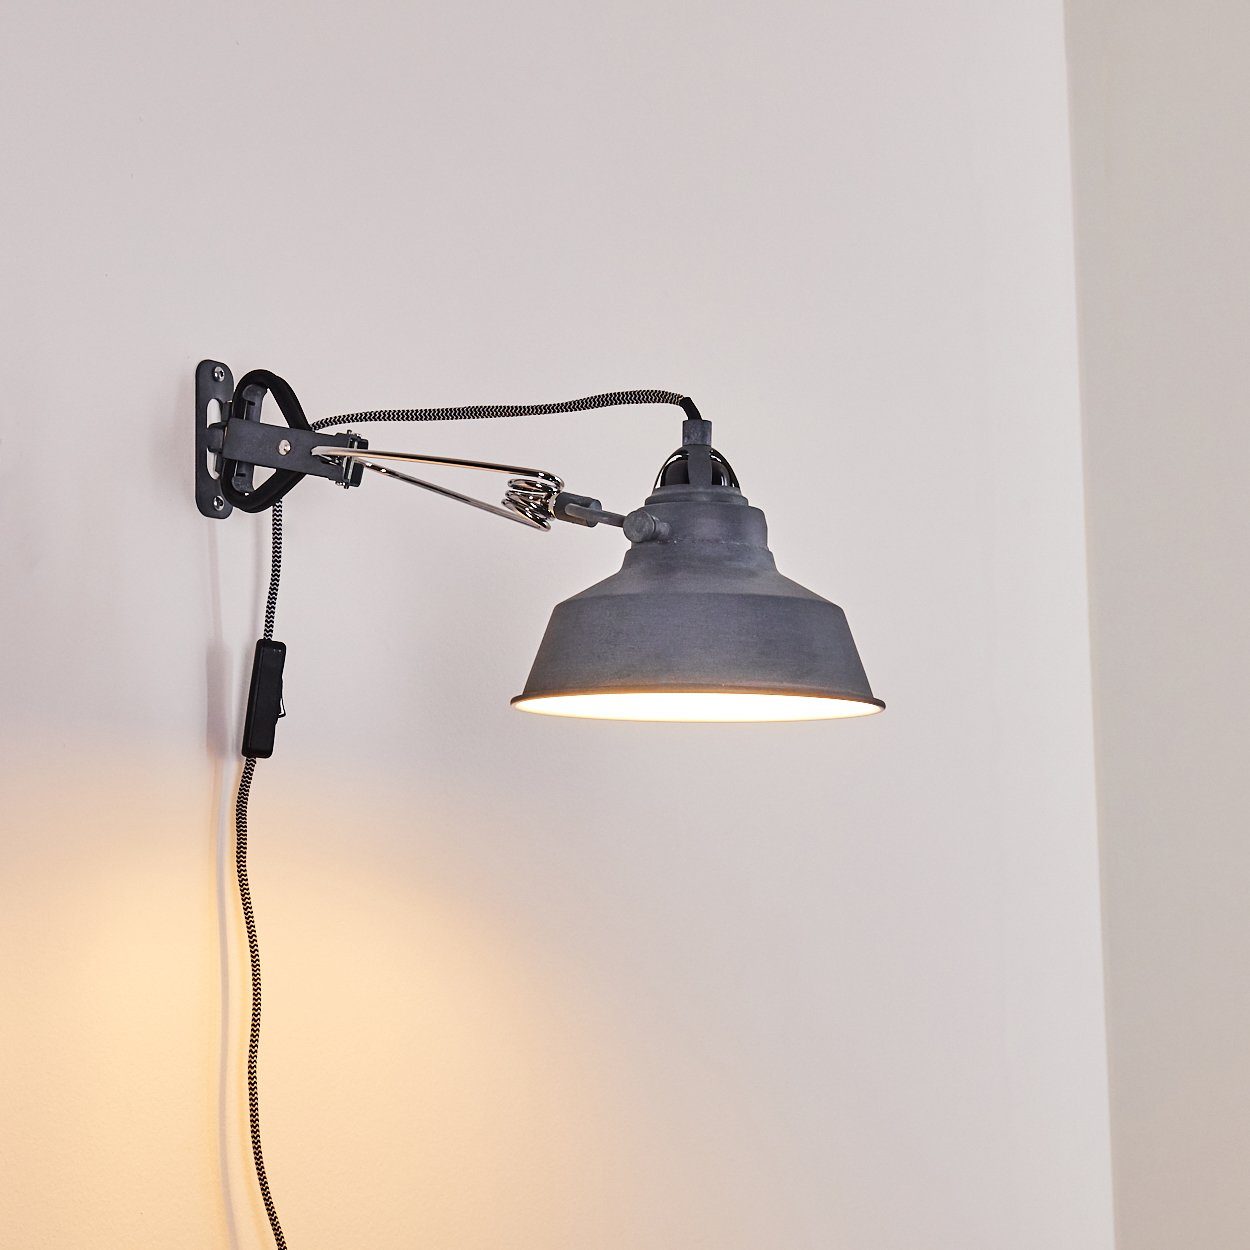 Leuchte Vintage Wand Flur Schlaf Wohn Zimmer Schalter Lampe Wandleuchte grau hofstein